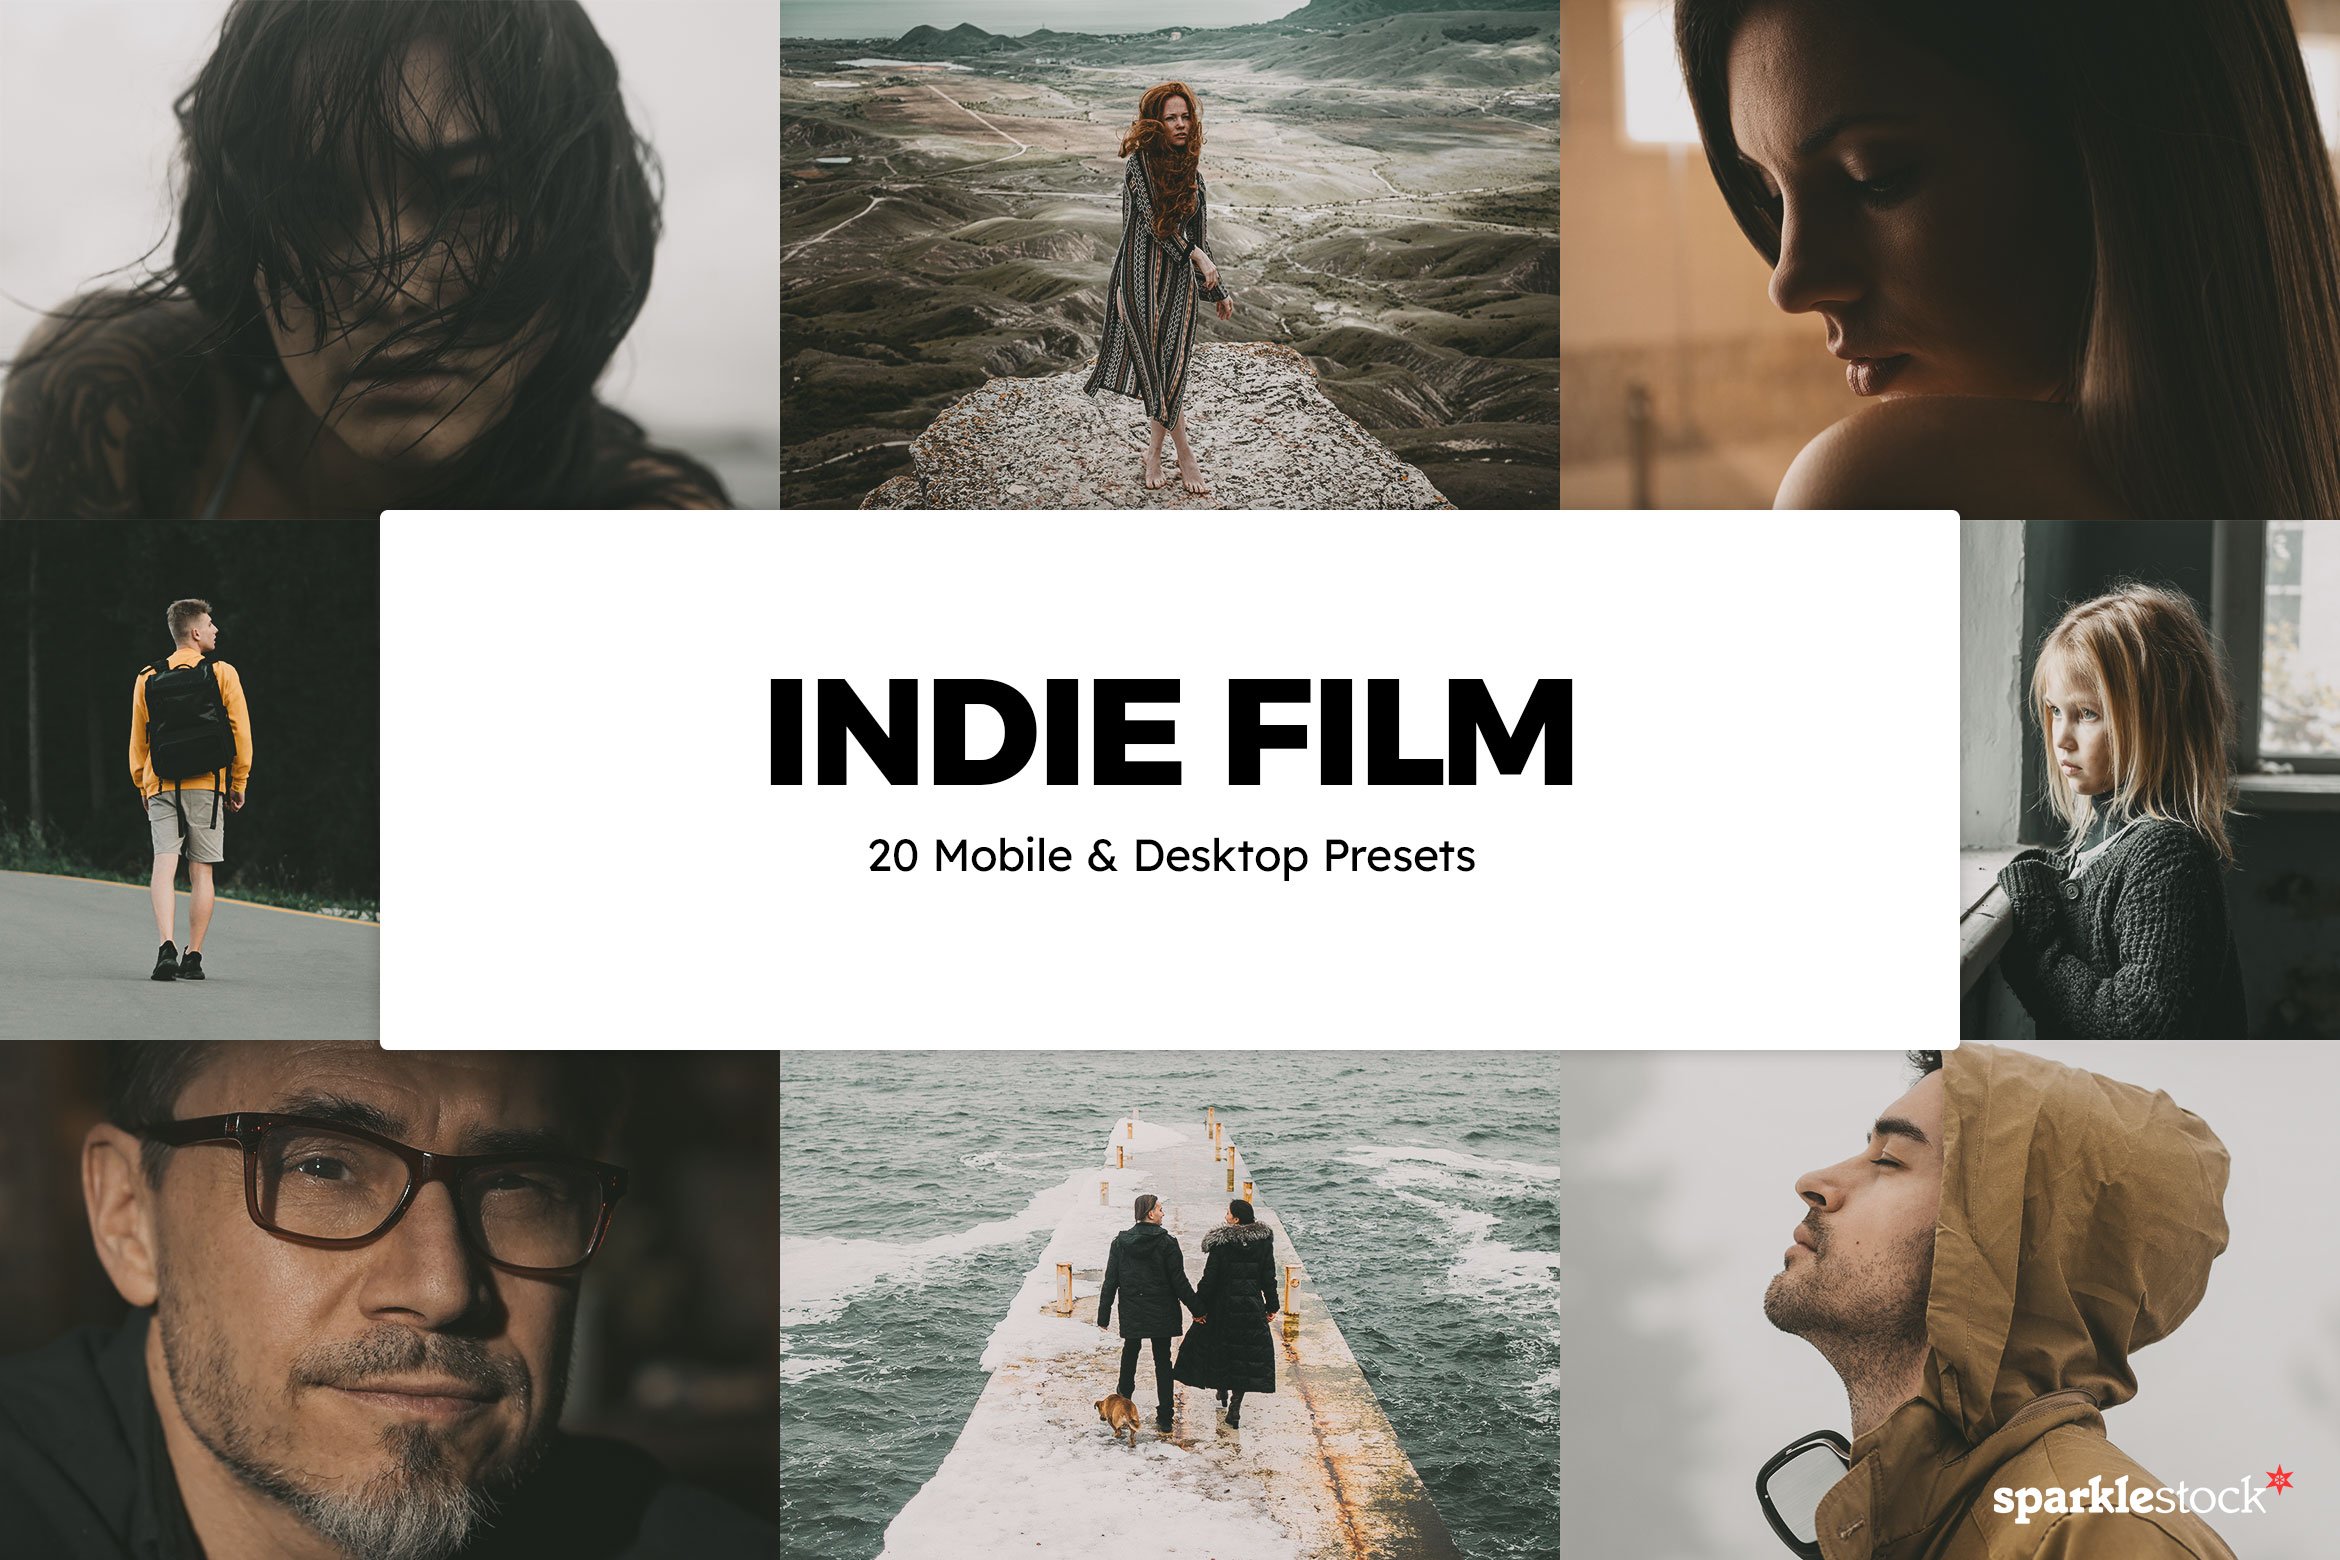 20 Indie Film Lightroom Presets LUTscover image.